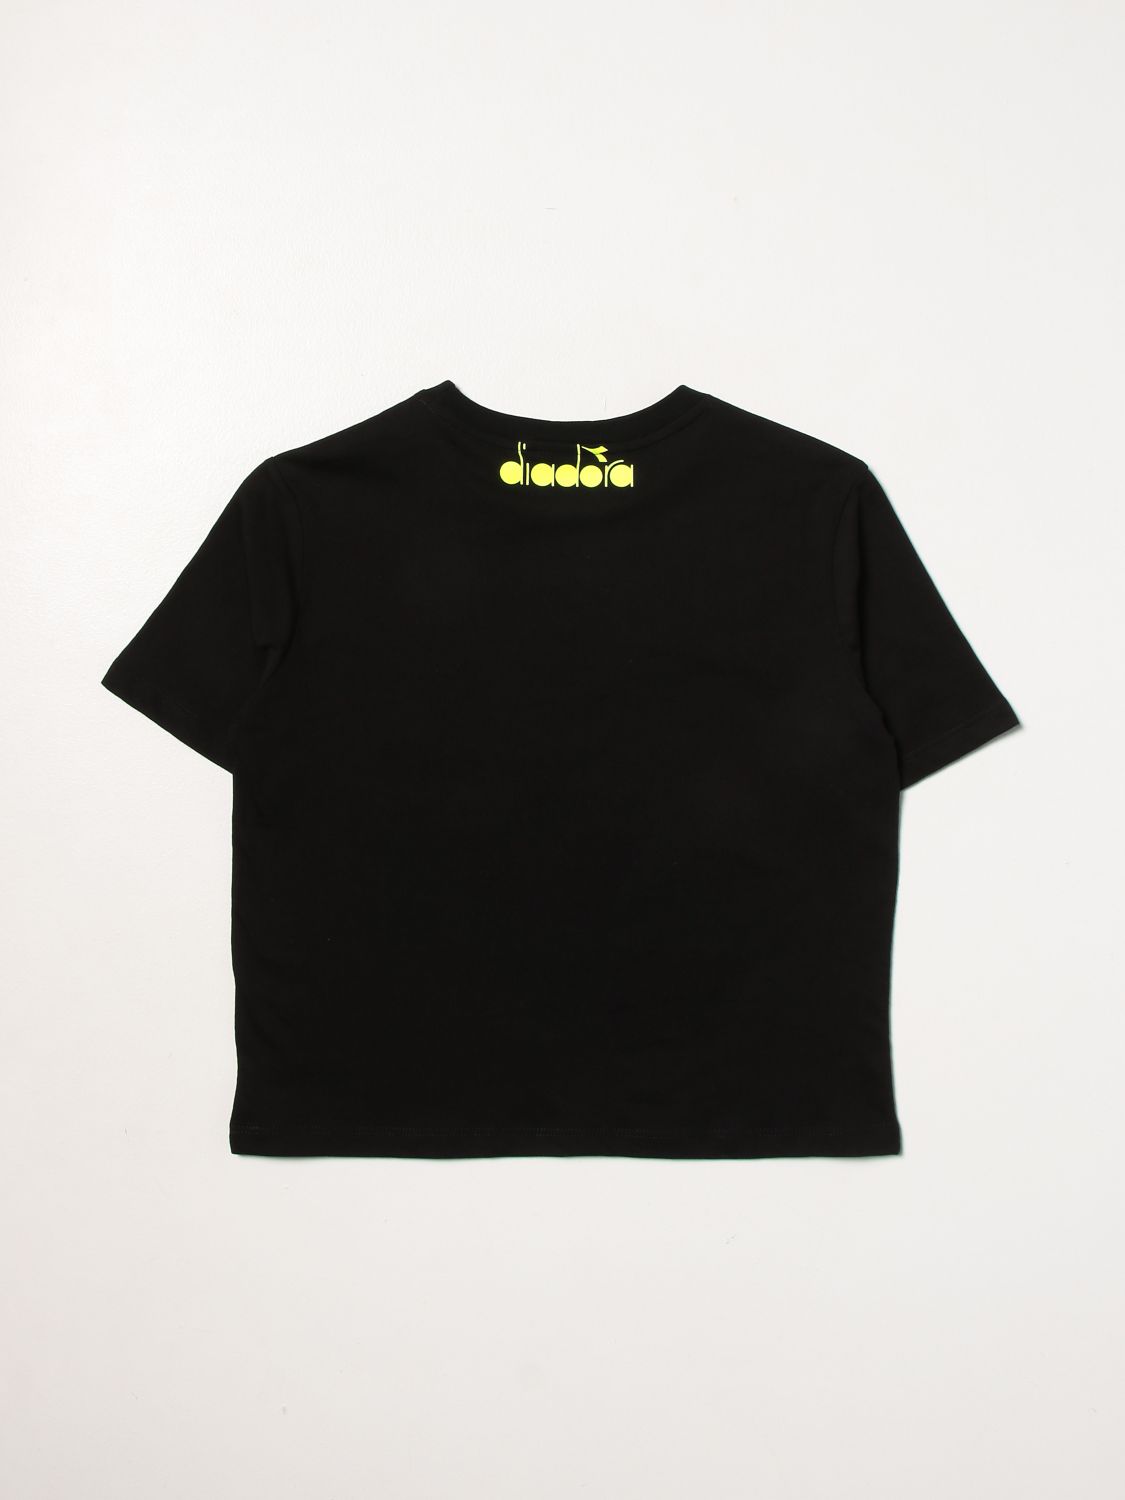 T恤 Diadora: T恤 儿童 Diadora 黑色 2